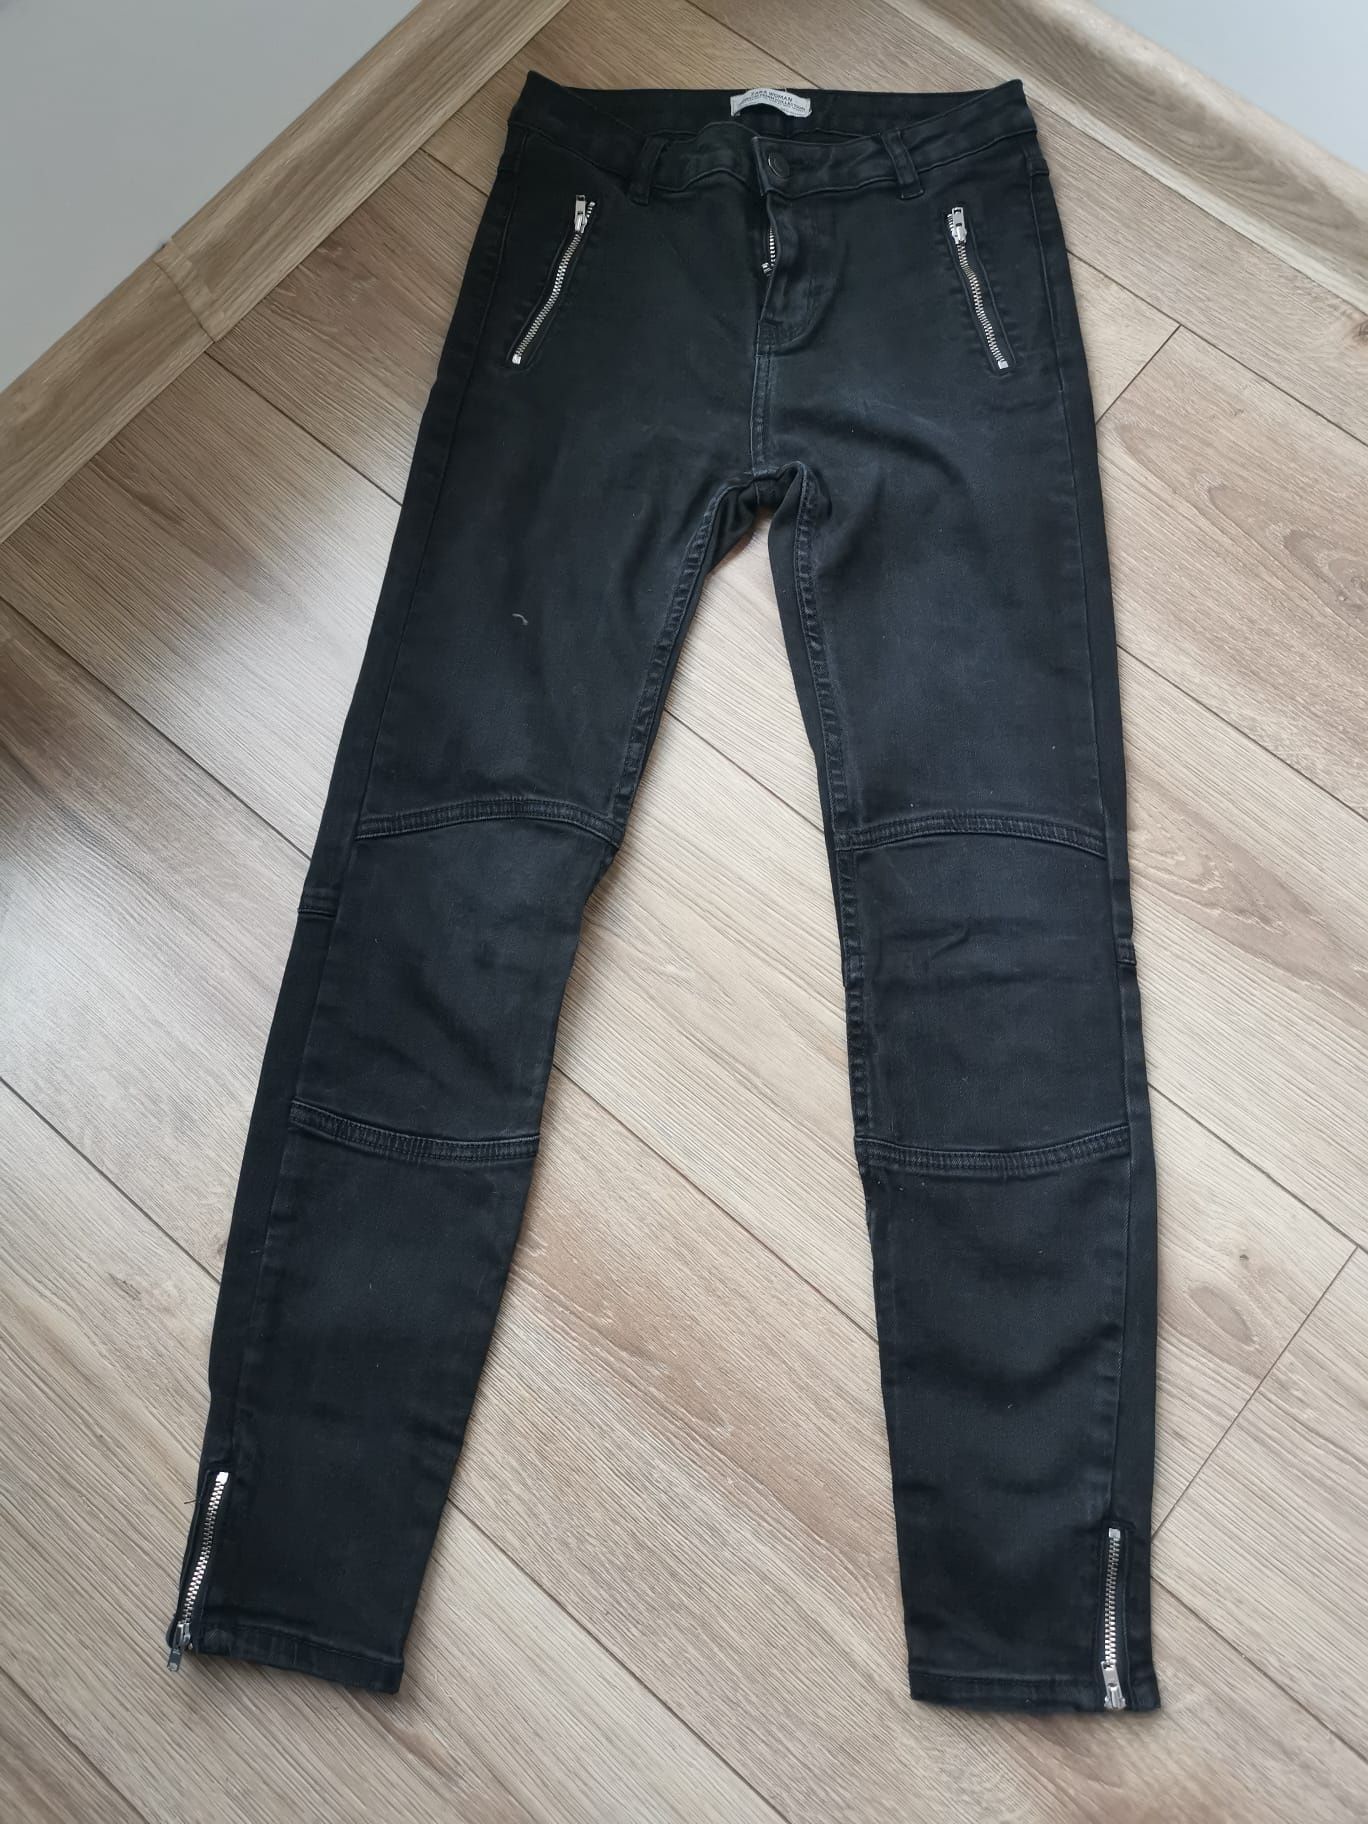 Spodnie czarny jeans Zara 34